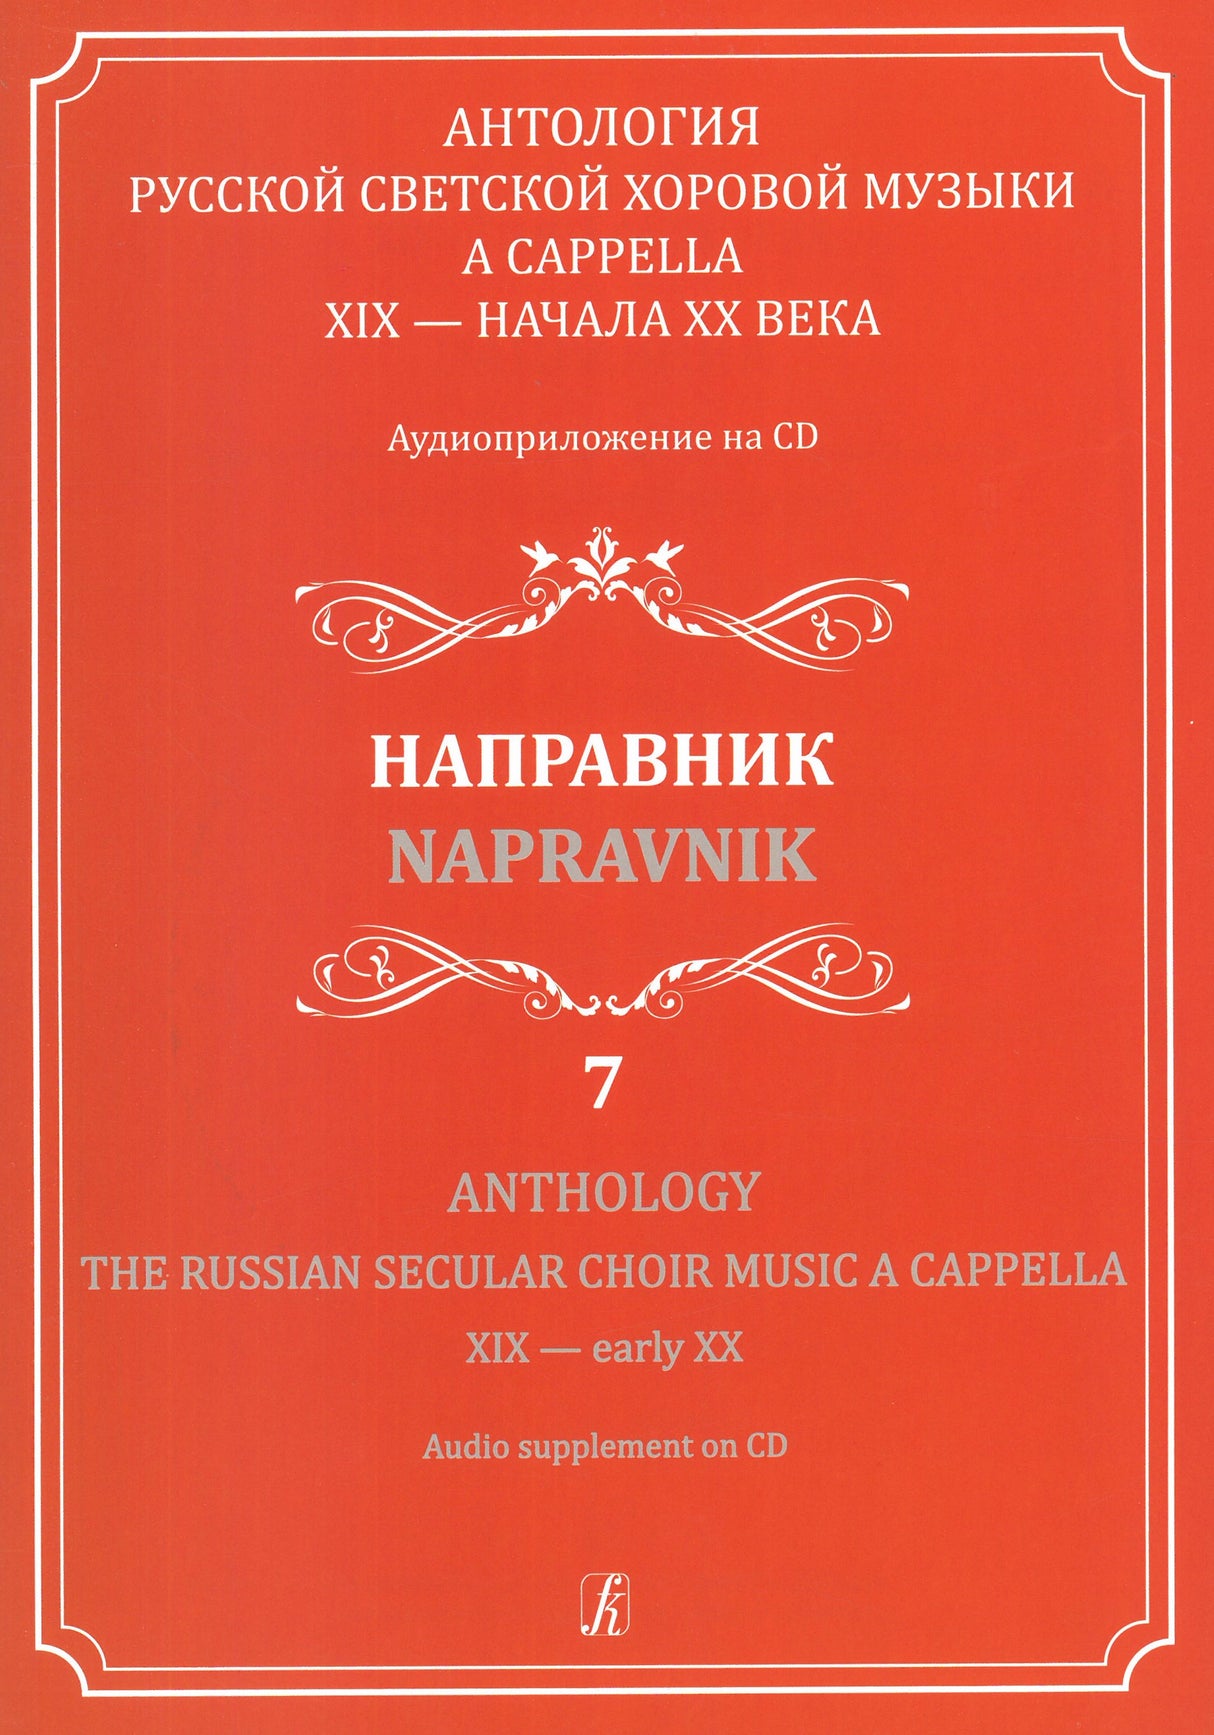 The Russian Secular Choir Music - Volume 7 (Nápravnik)